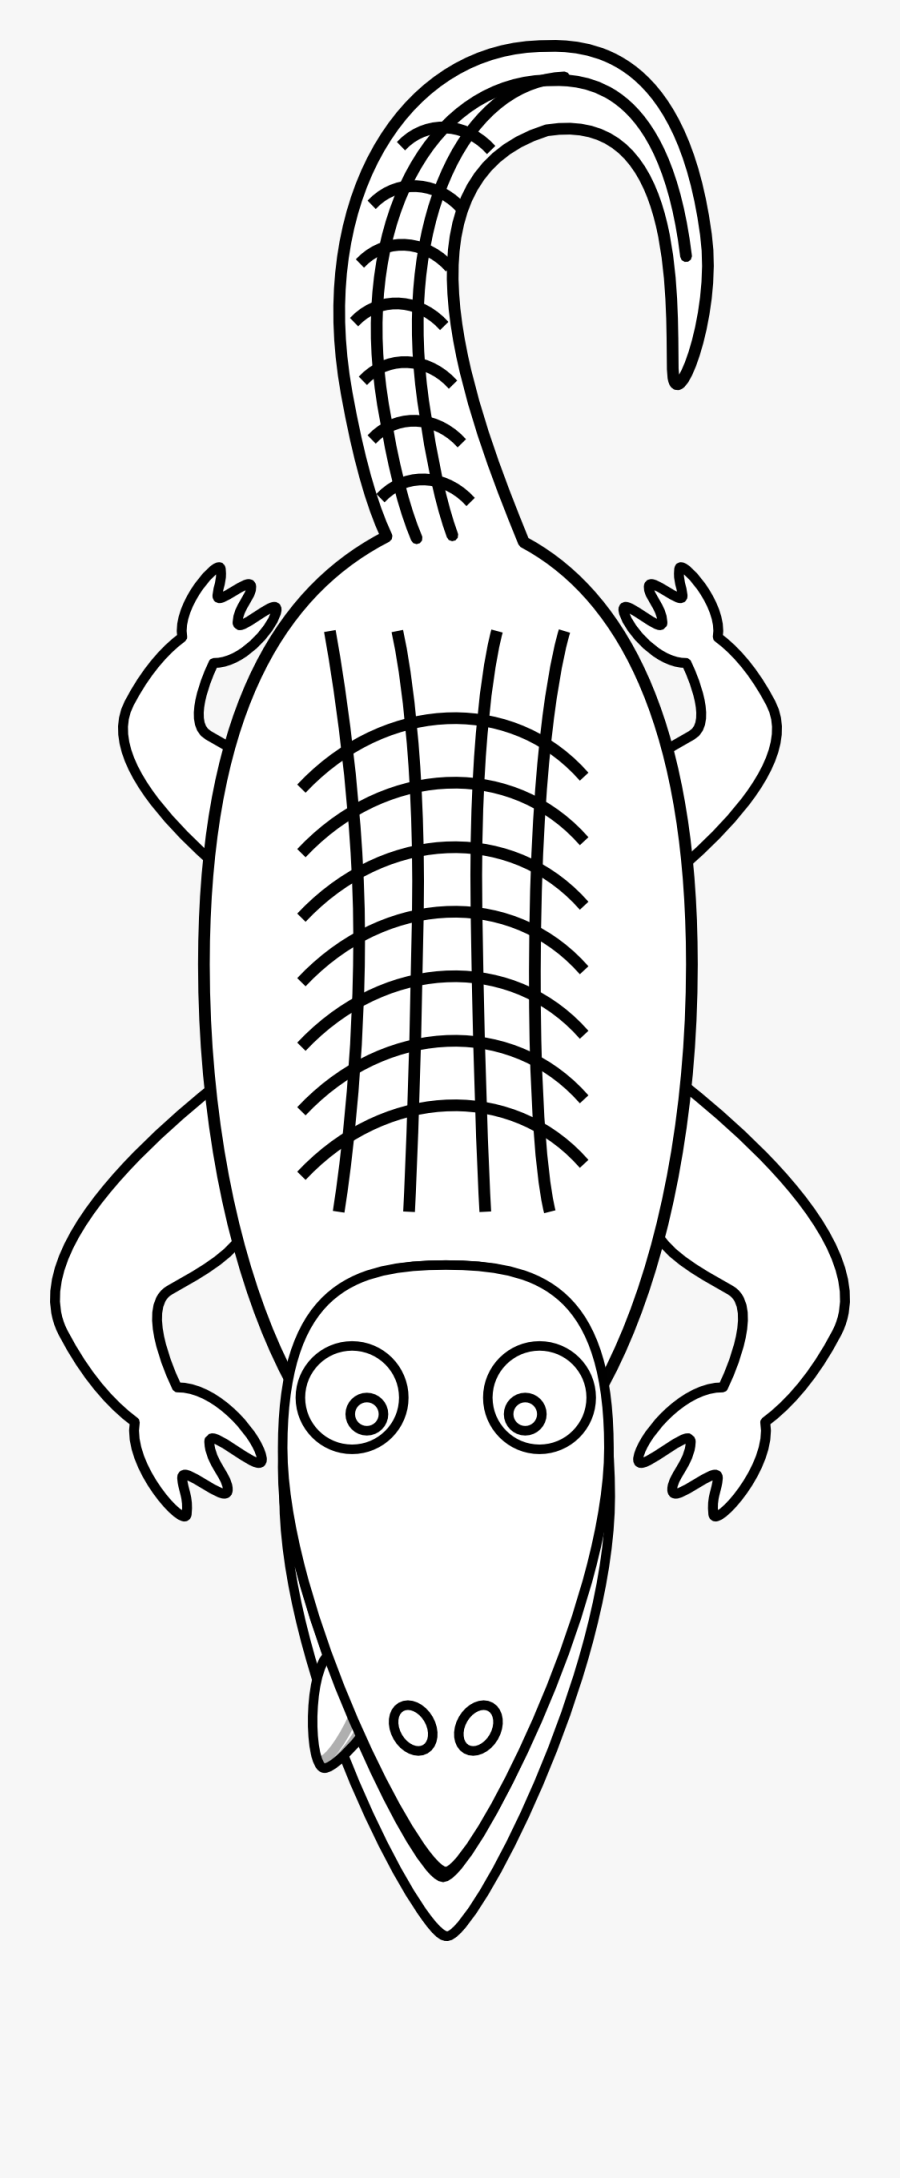 Pictures Of Alligator Free Download Clip Art Png - Line Art Alligator, Transparent Clipart